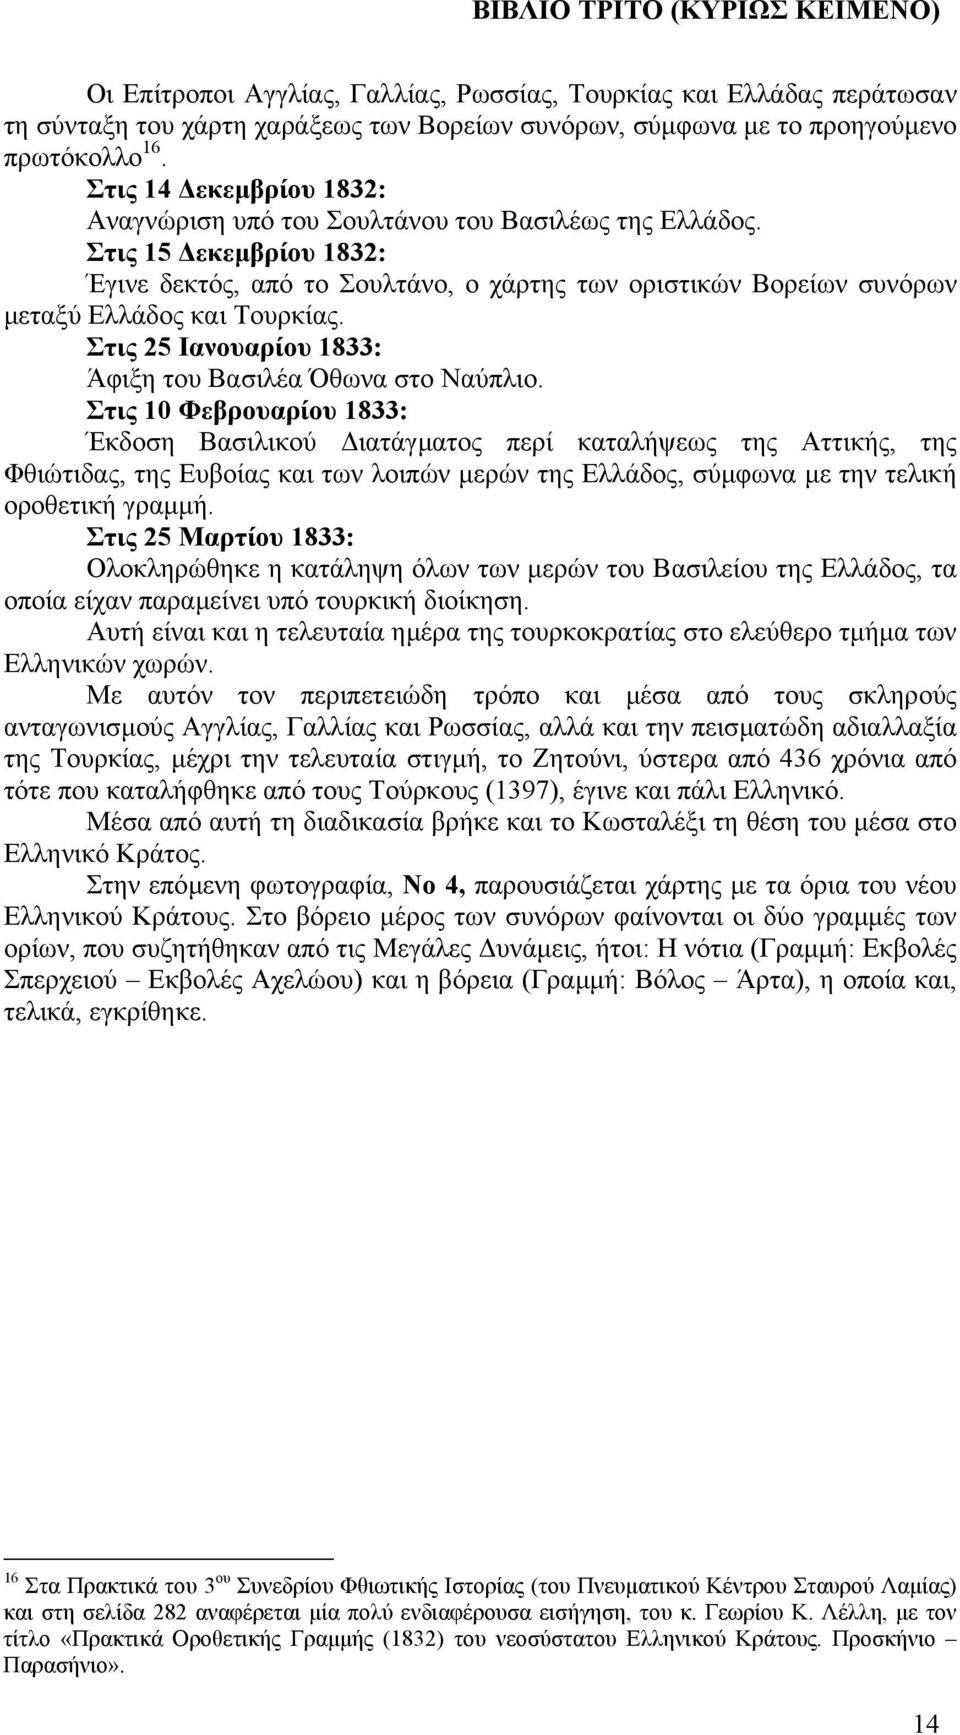 Στις 15 εκεµβρίου 1832: Έγινε δεκτός, από το Σουλτάνο, ο χάρτης των οριστικών Βορείων συνόρων µεταξύ Ελλάδος και Τουρκίας. Στις 25 Ιανουαρίου 1833: Άφιξη του Βασιλέα Όθωνα στο Ναύπλιο.